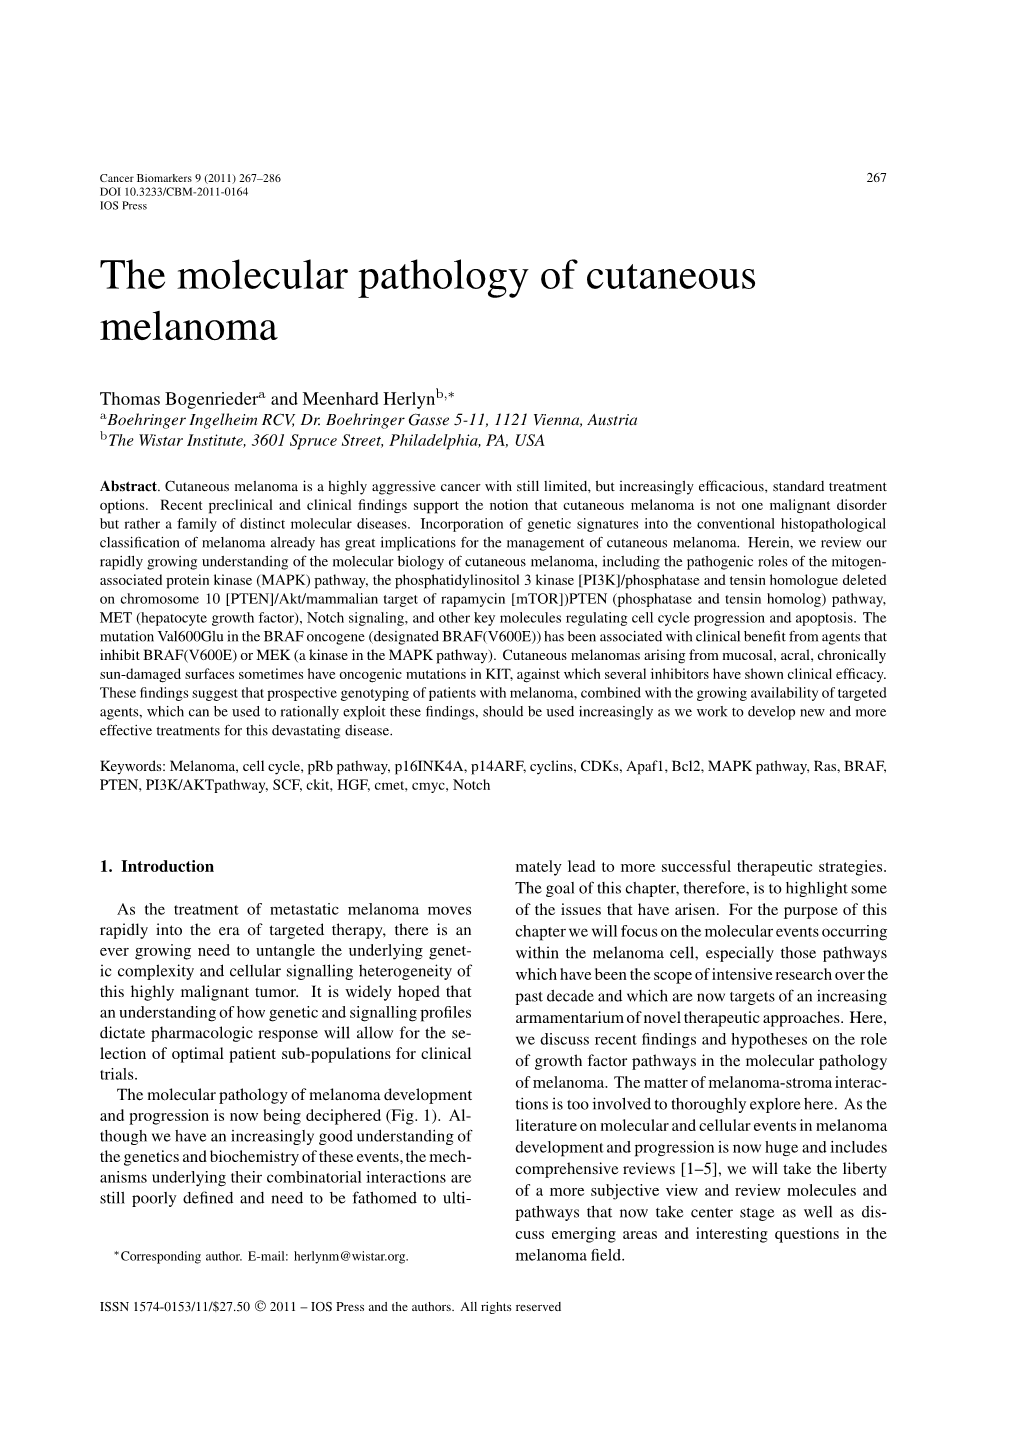 The Molecular Pathology of Cutaneous Melanoma